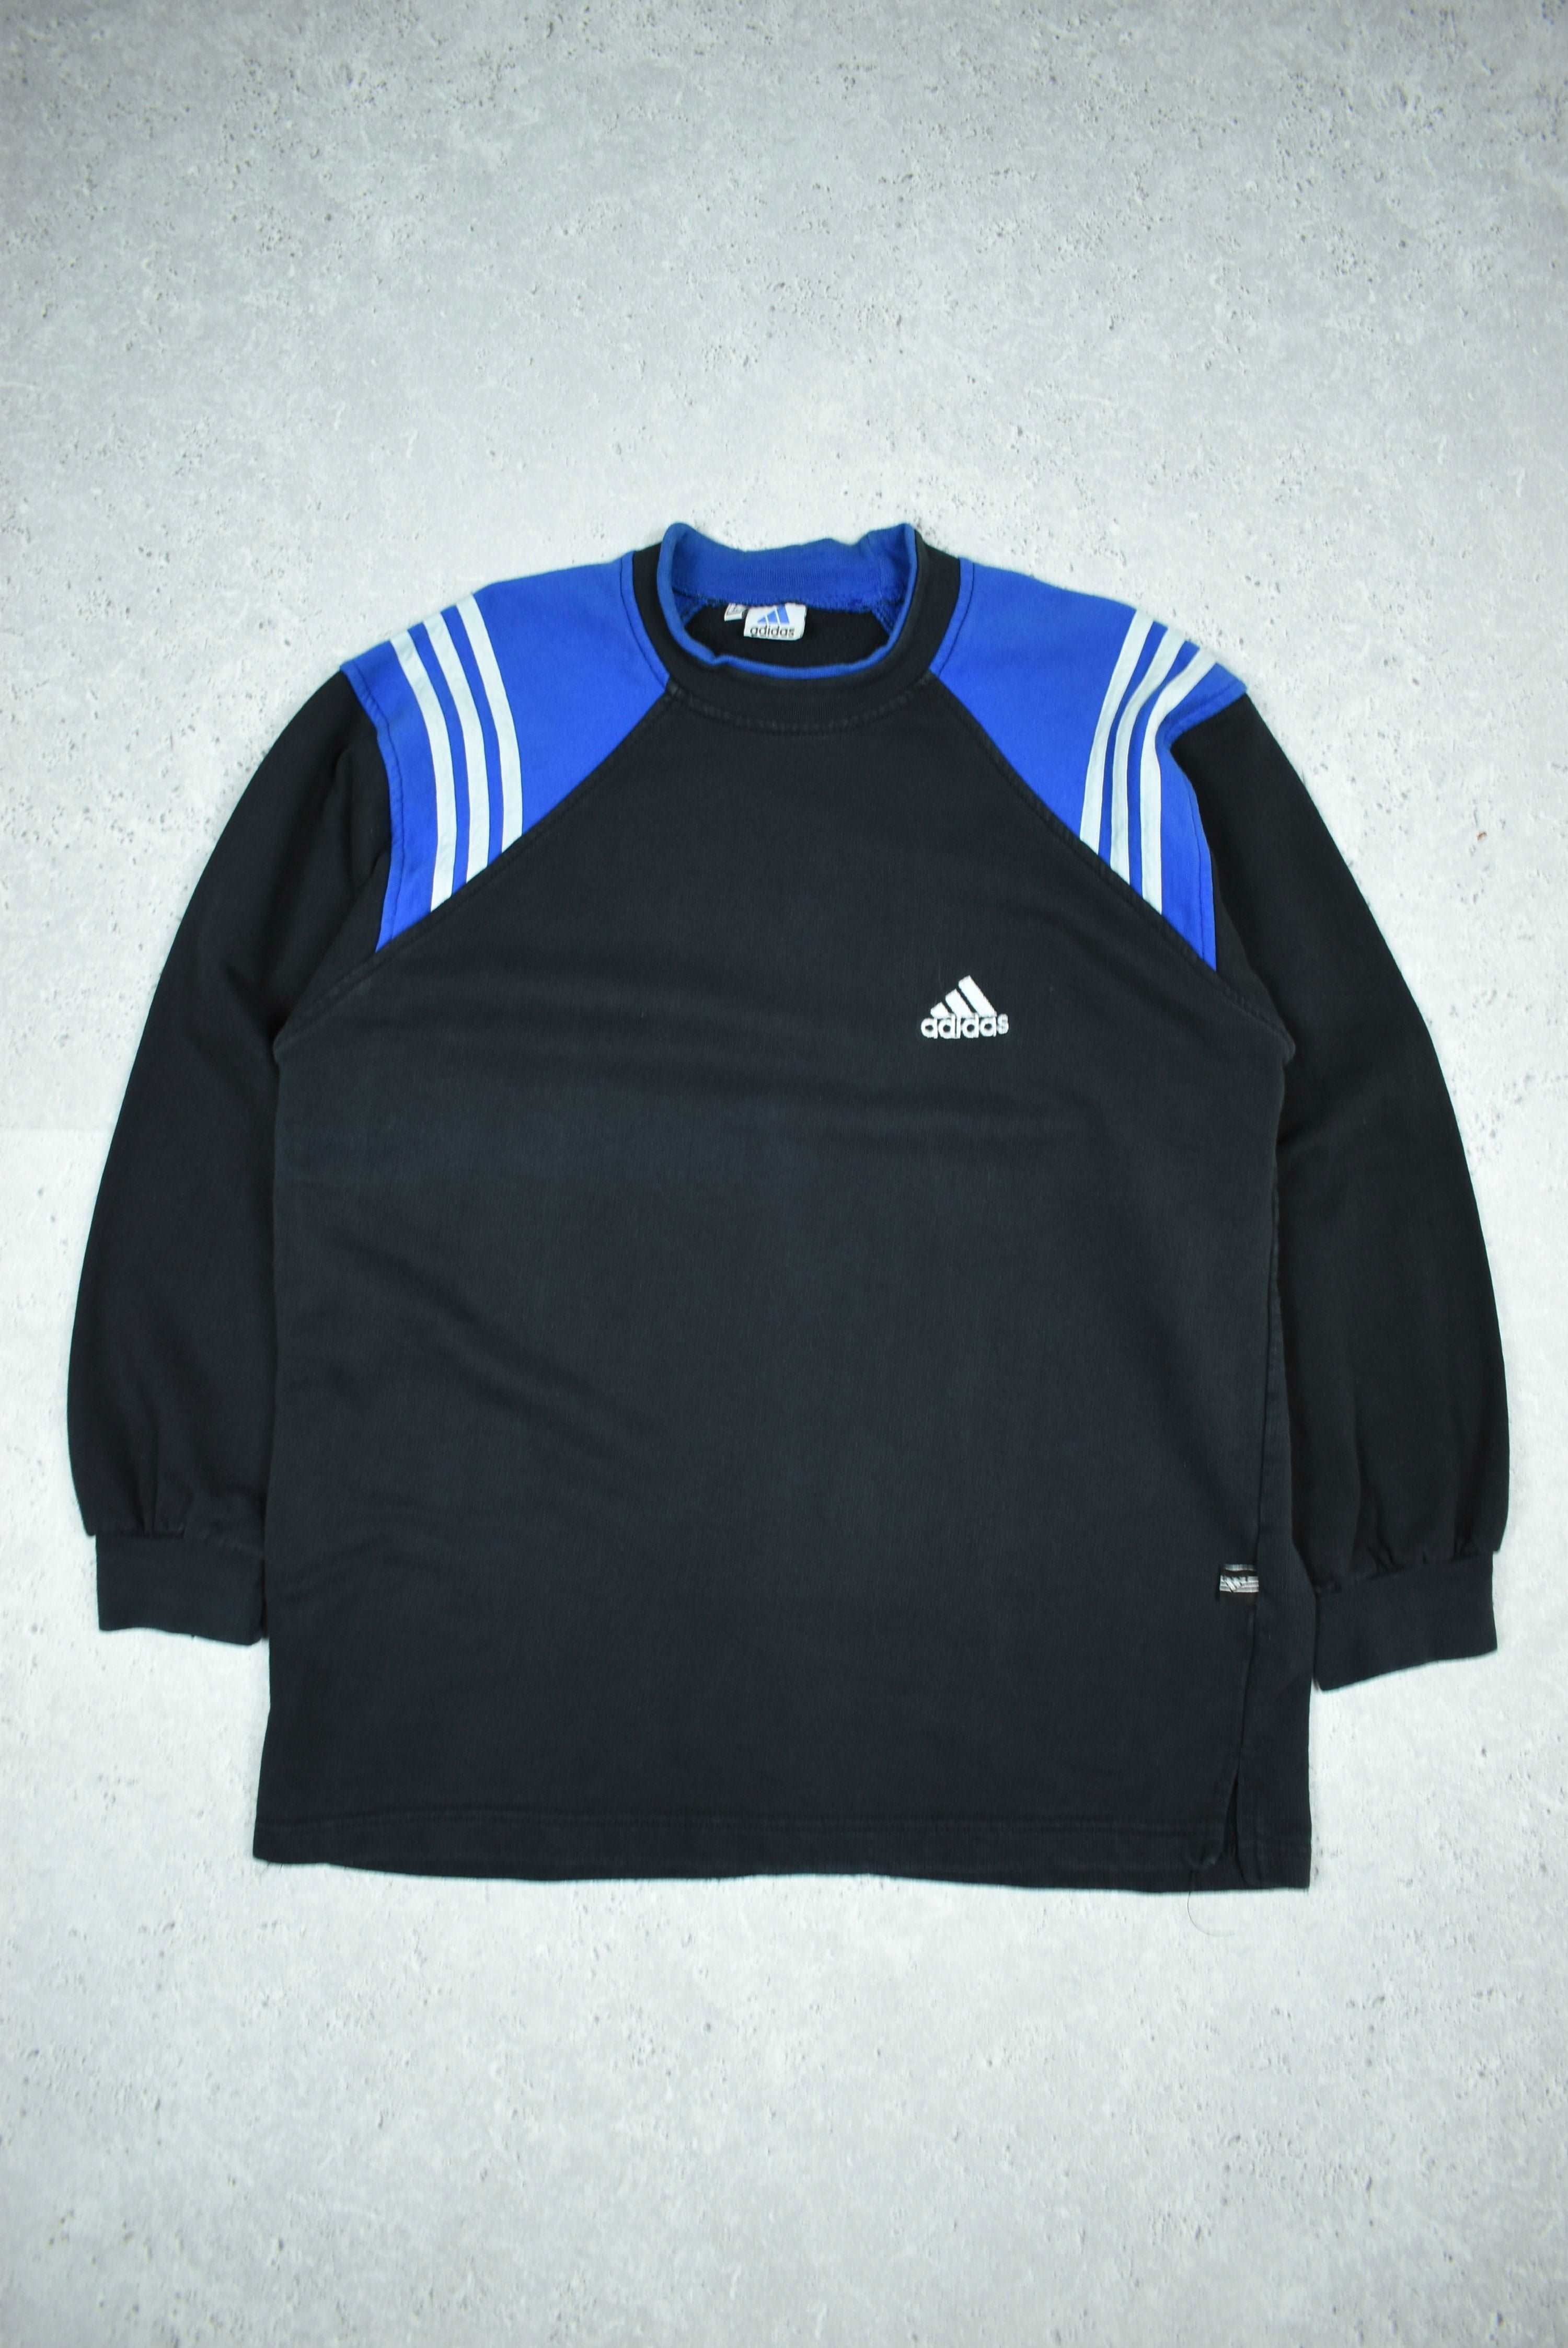 Vintage Adidas Embroidered Sweatshirt Medium